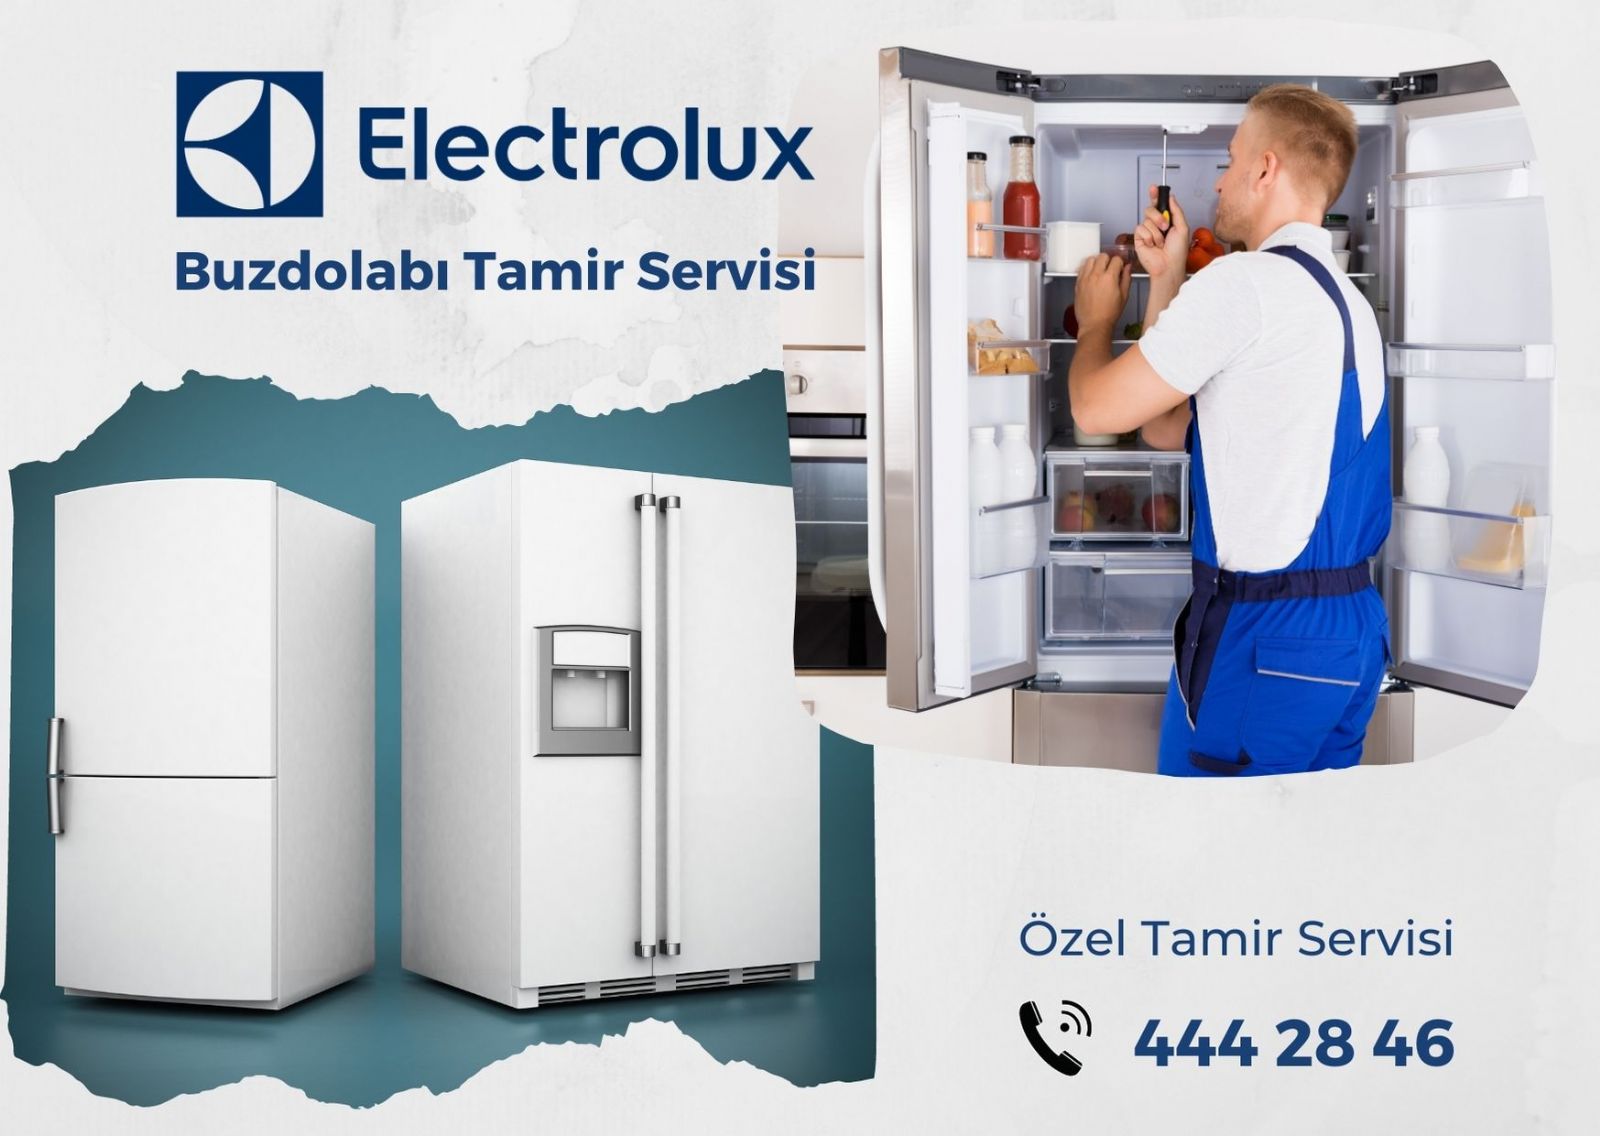 Electrolux Buzdolabı Tamiri & Arıza Servisi